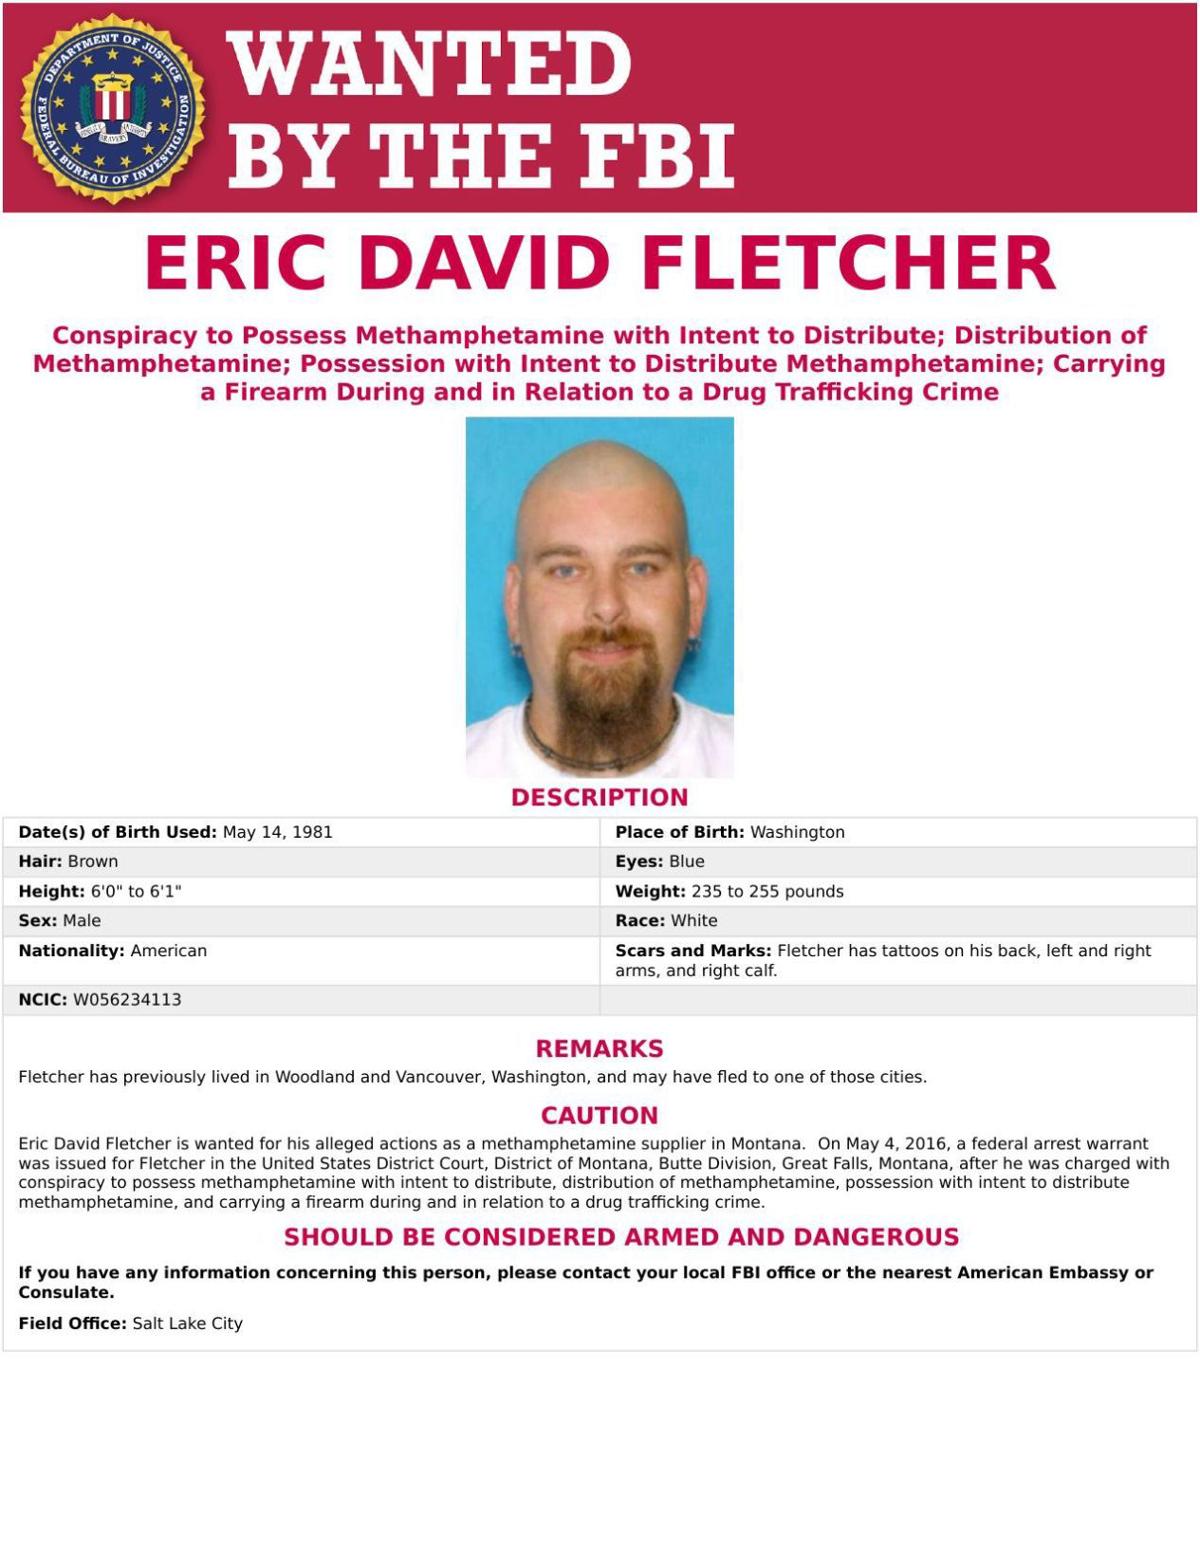 FBI wanted poster on Eric David Fletcher